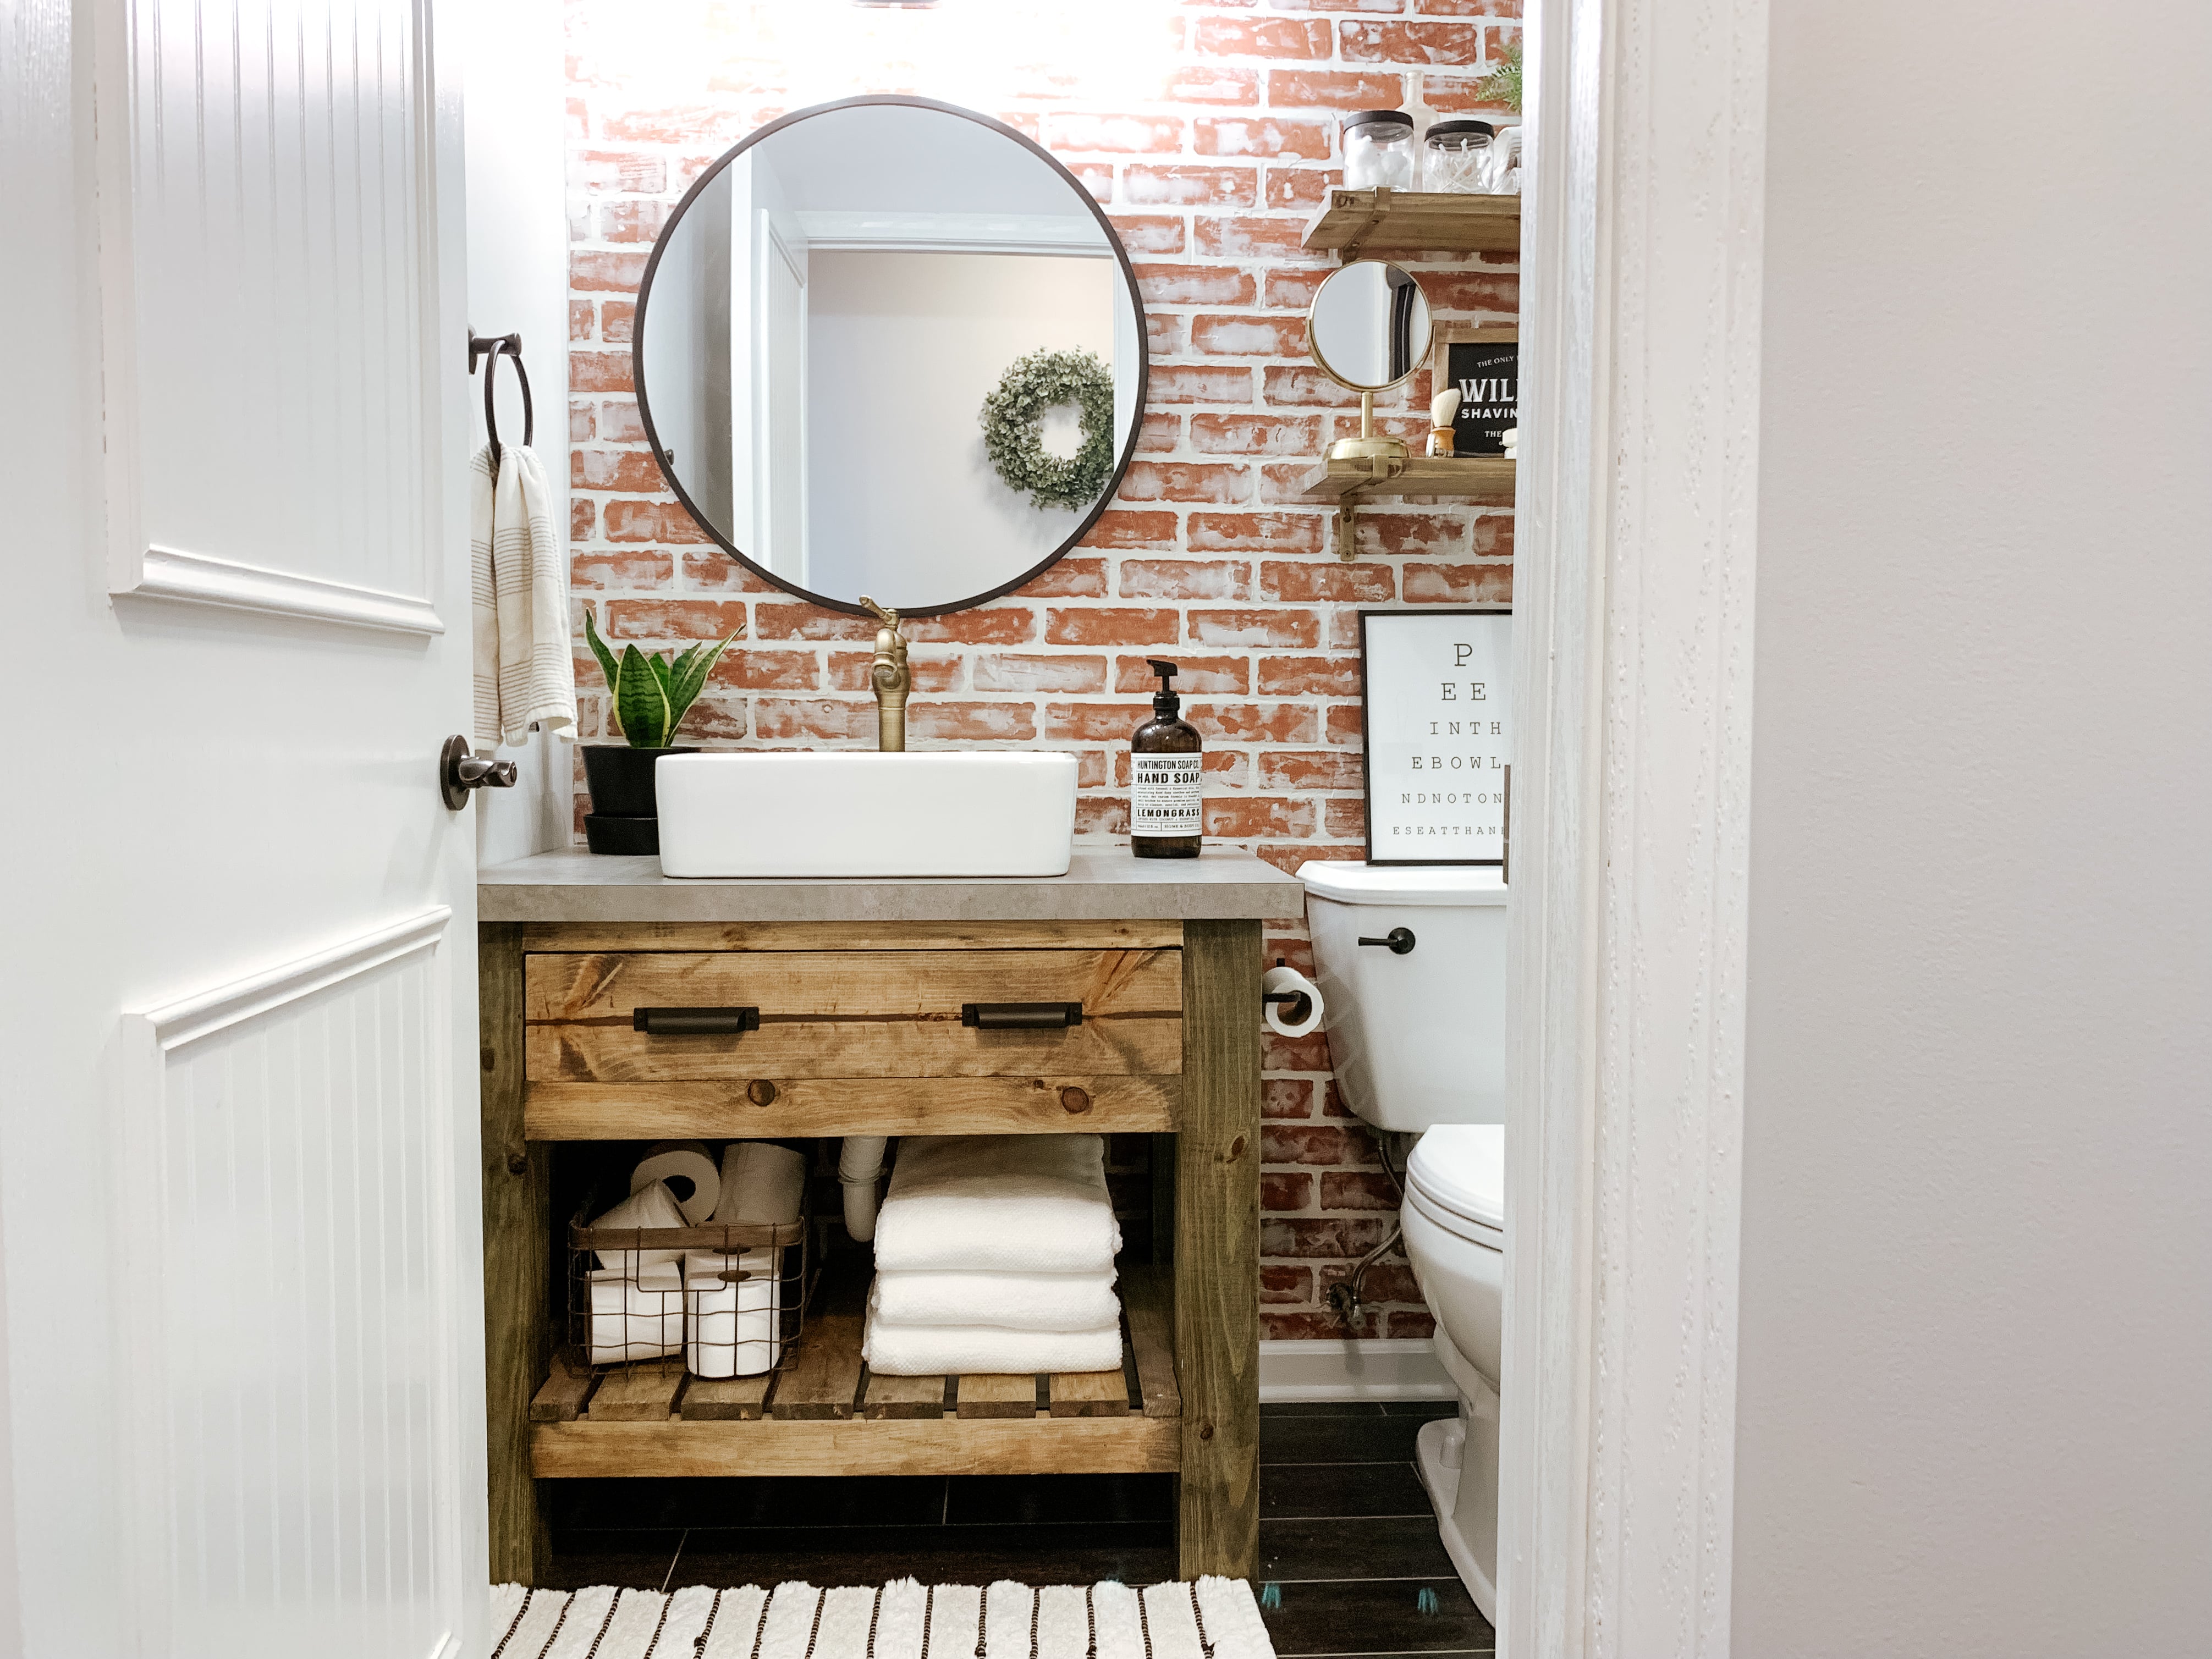 Diy Rustic Bathroom Vanity Sammy On State, Diy Small Bathroom Vanity Plans